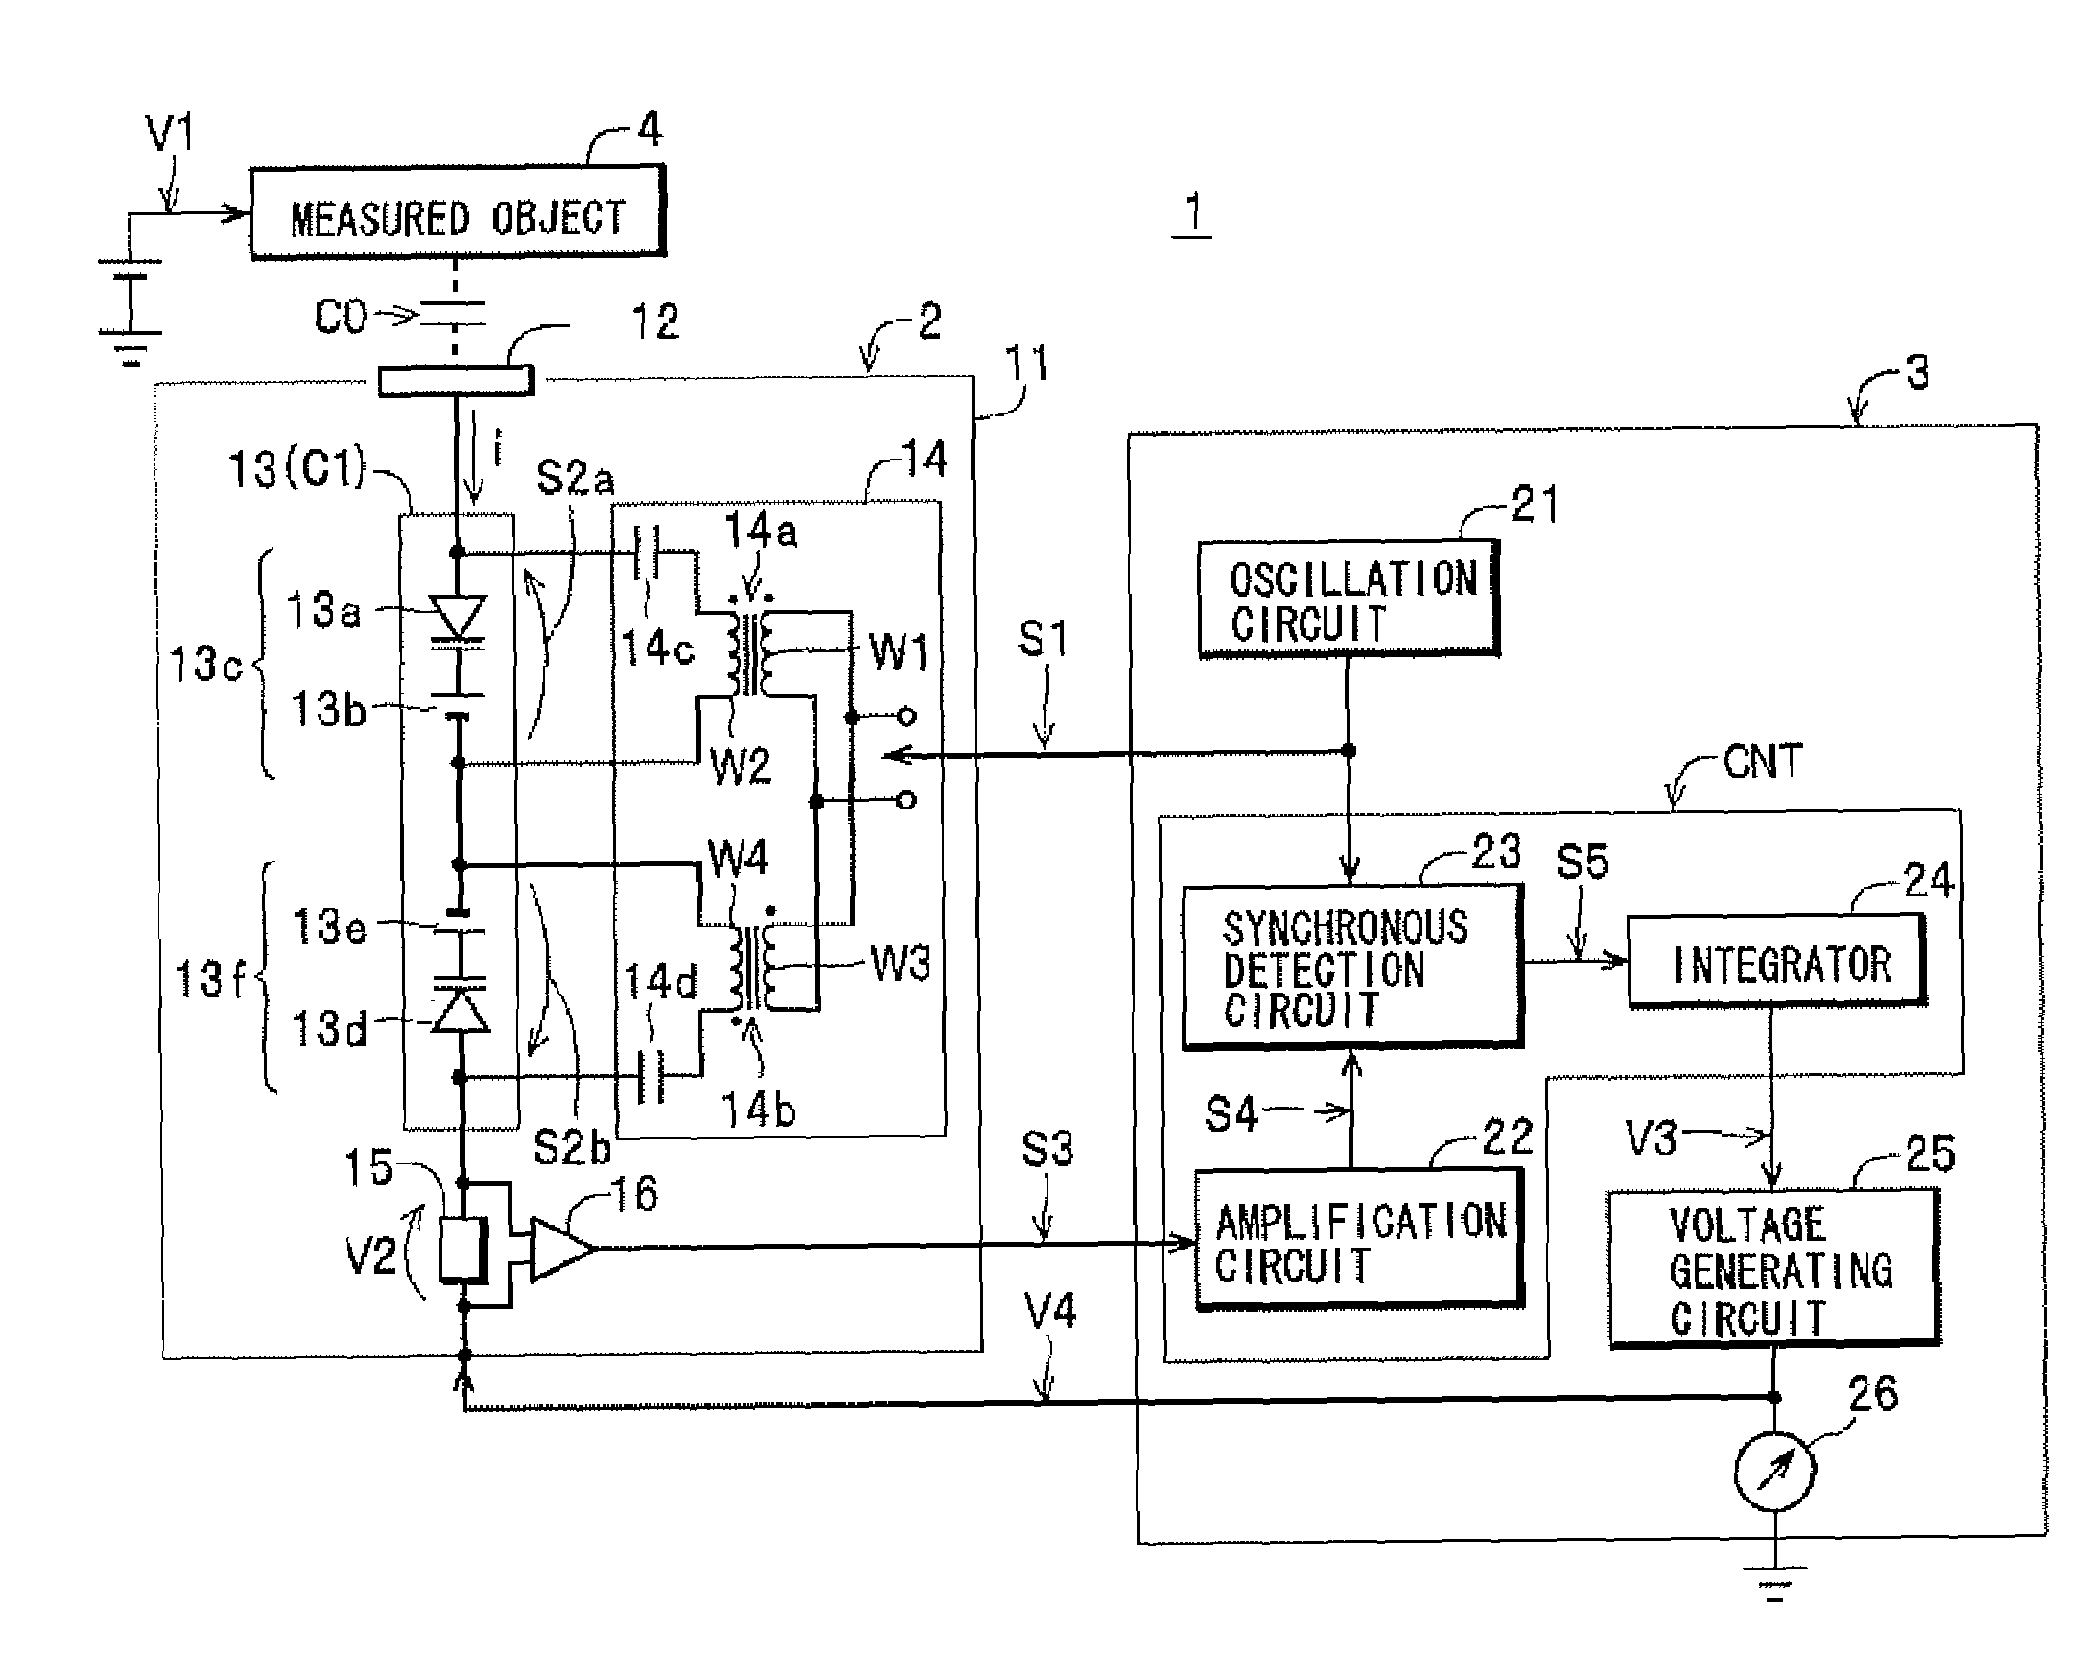 Voltage measuring apparatus and power measuring apparatus